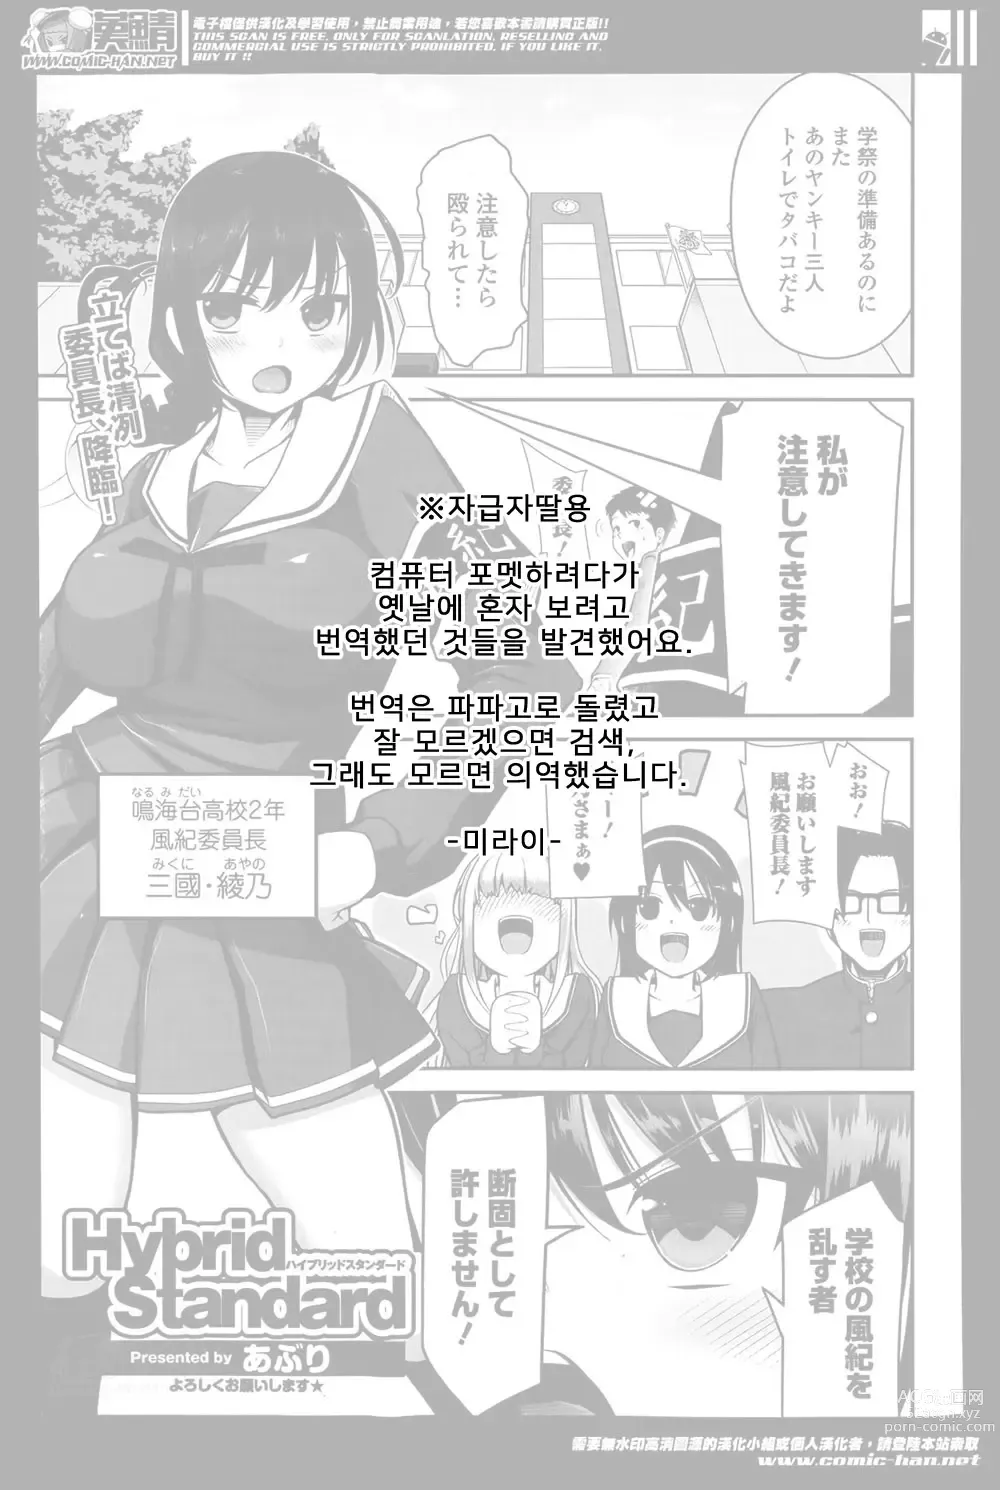 Page 1 of manga Hybrid Standard